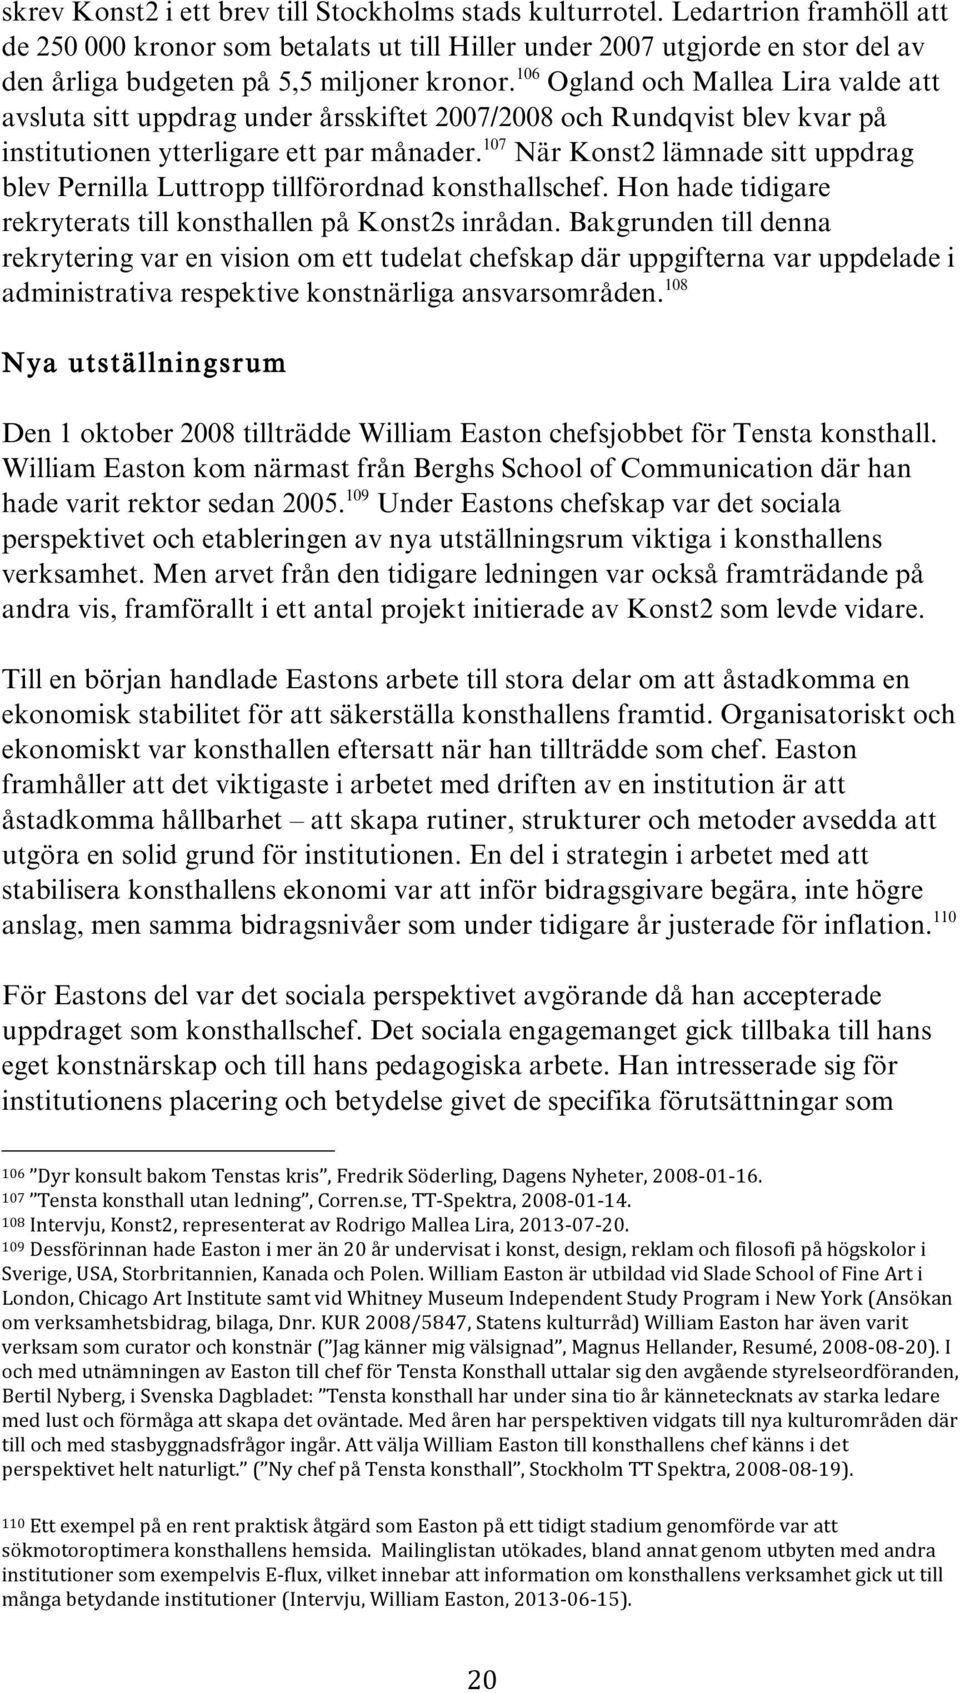 106 Ogland och Mallea Lira valde att avsluta sitt uppdrag under årsskiftet 2007/2008 och Rundqvist blev kvar på institutionen ytterligare ett par månader.